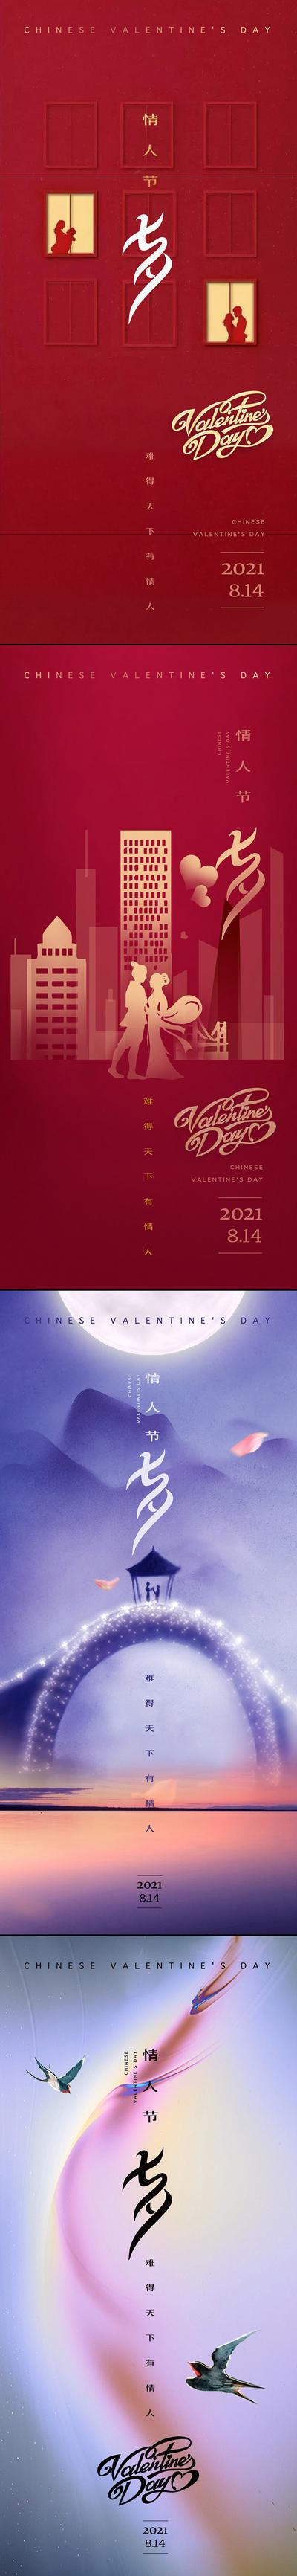 南门网 海报 房地产 中国传统节日 七夕 情人节 系列